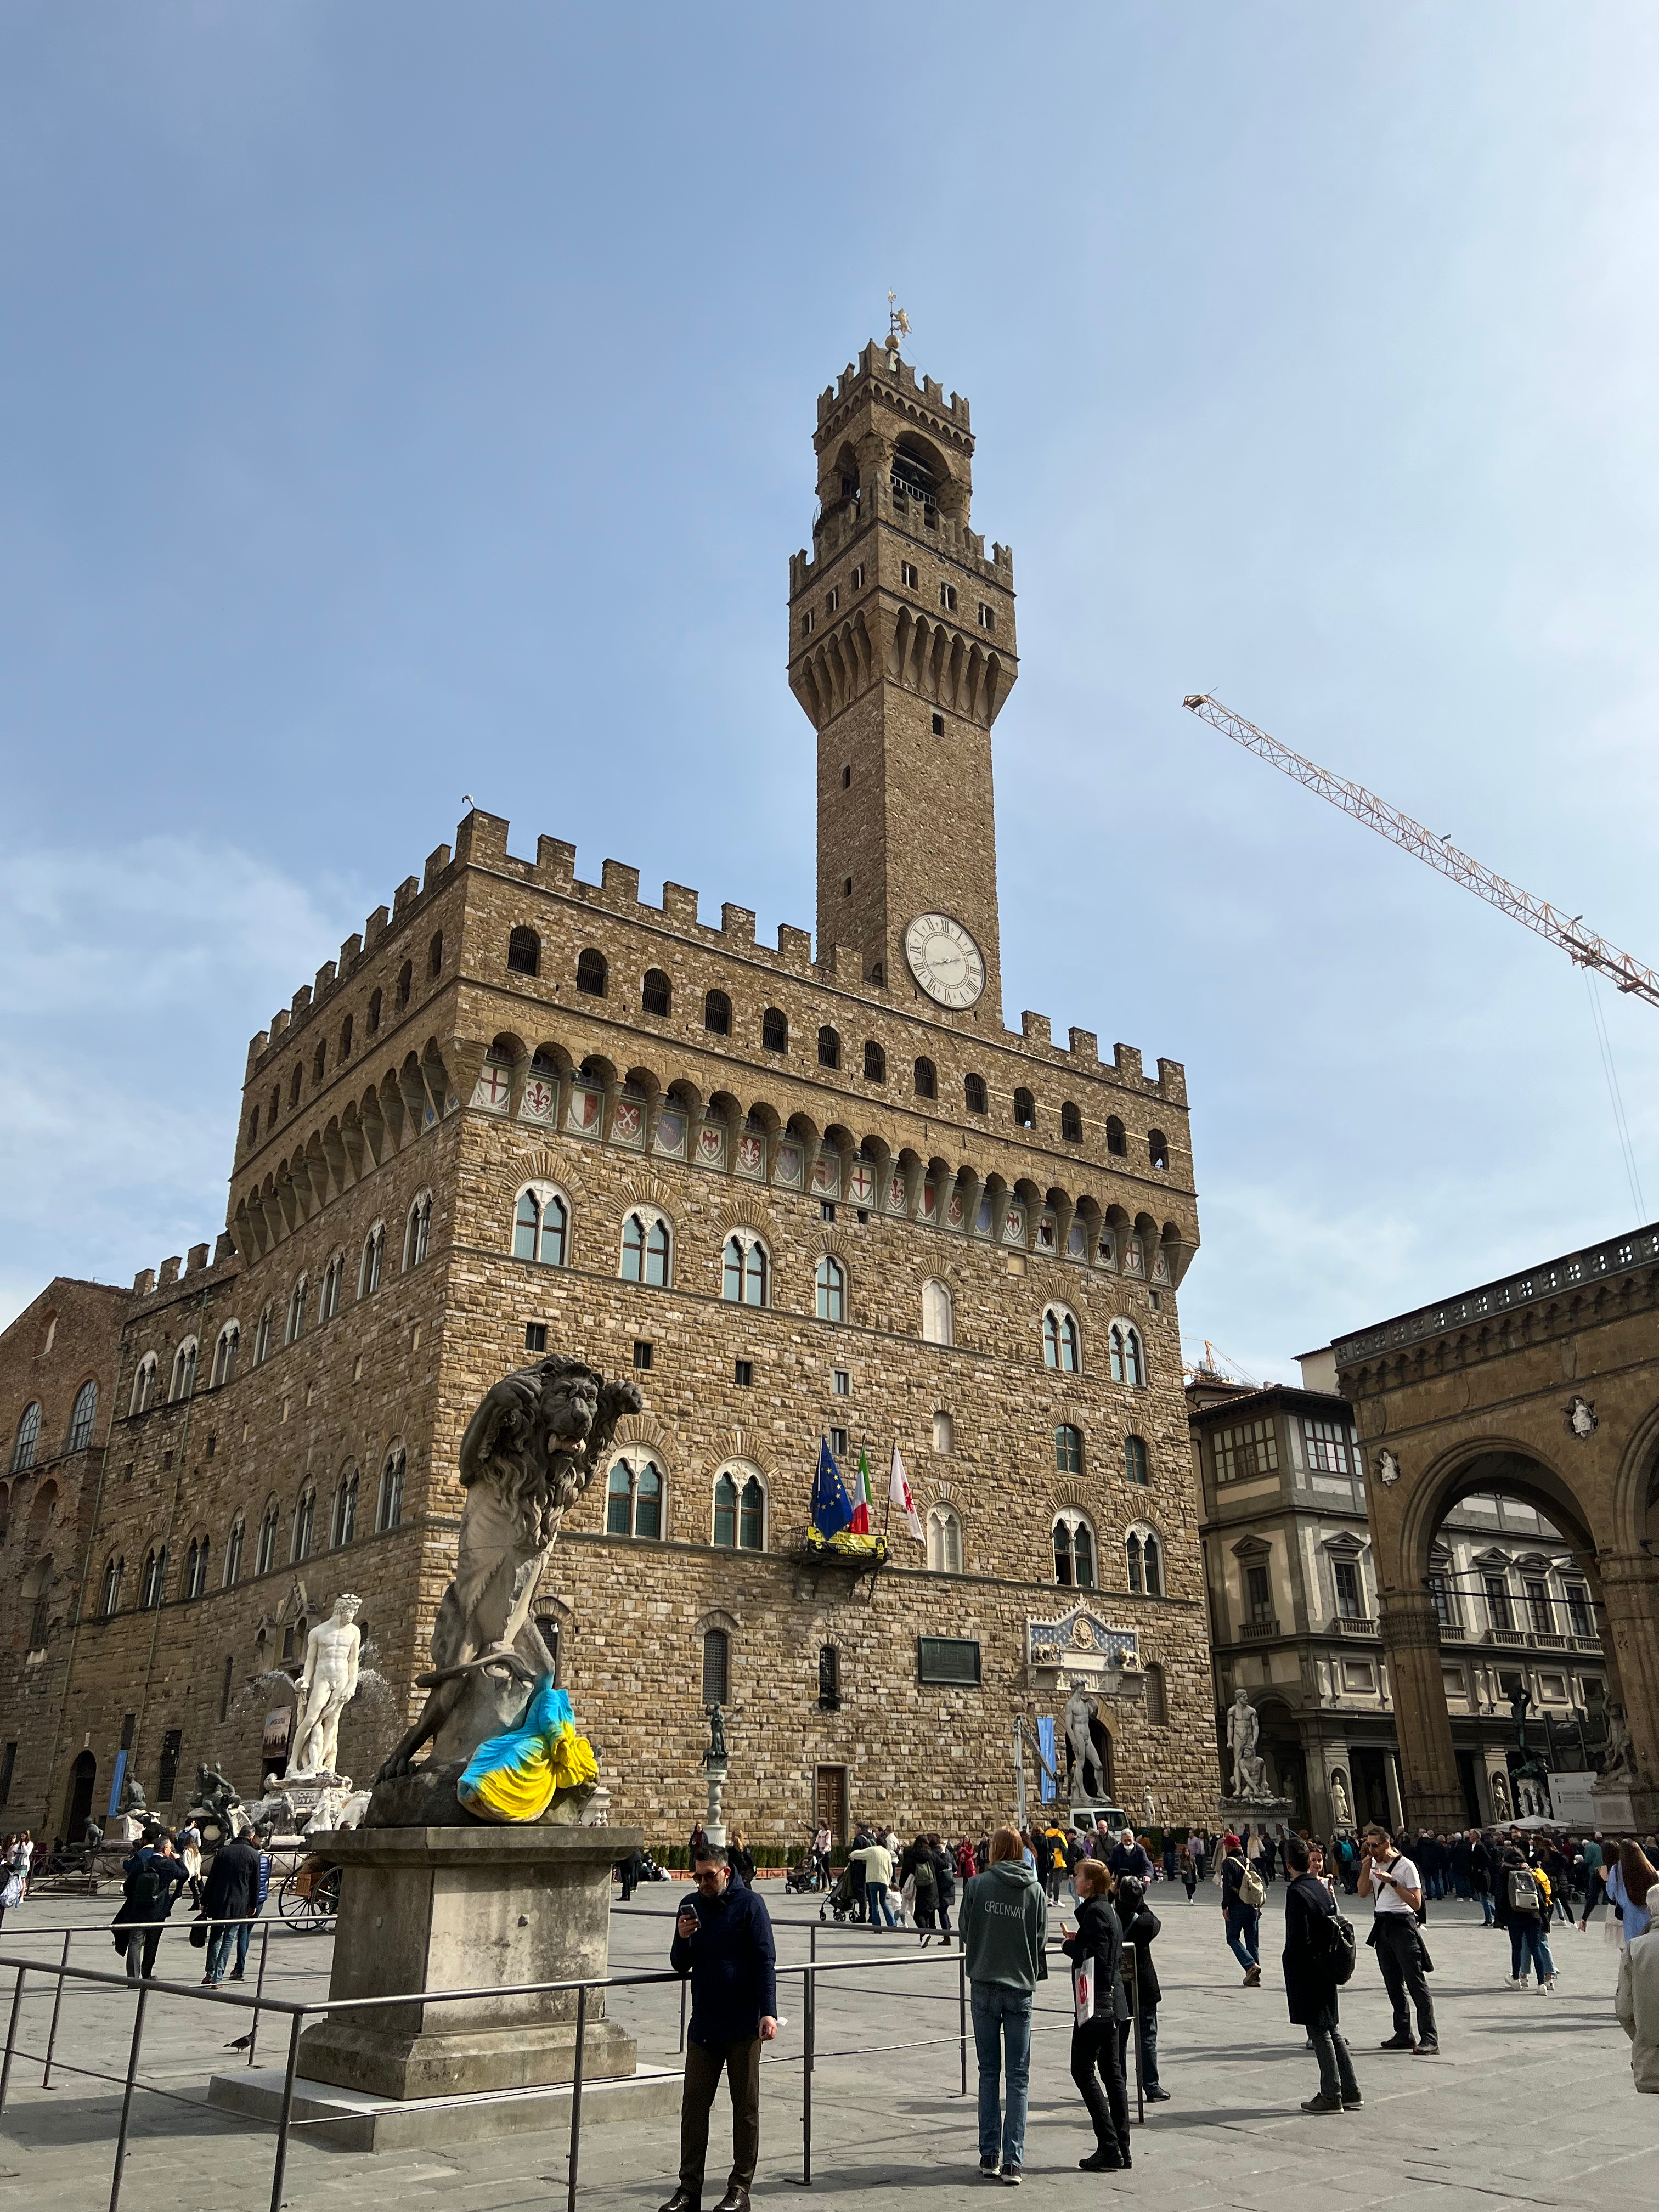 Arnolfo-Turm am Piazza della Signoria